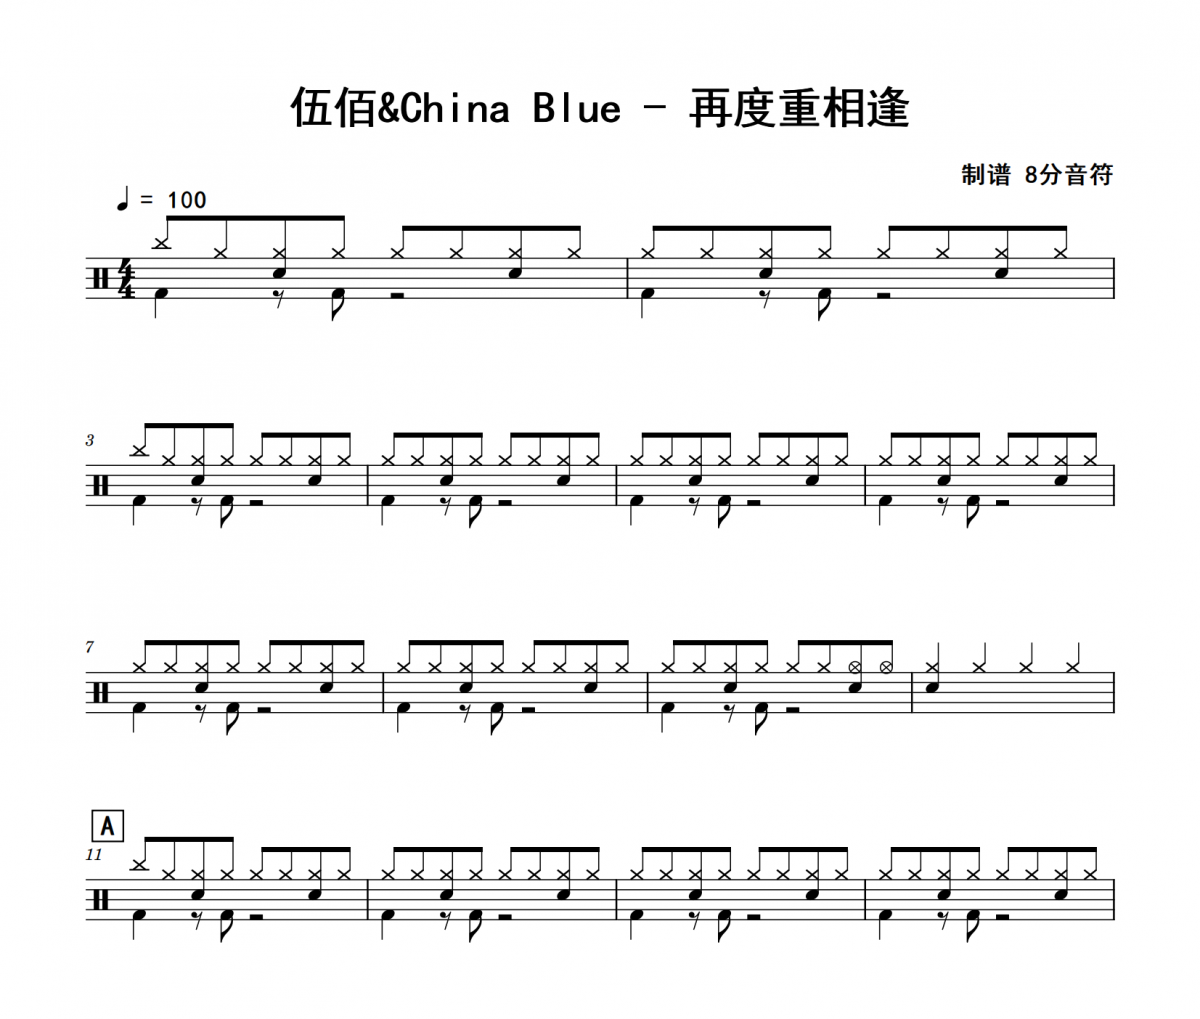 伍佰&China Blue《再度重相逢》架子鼓|爵士鼓|鼓谱